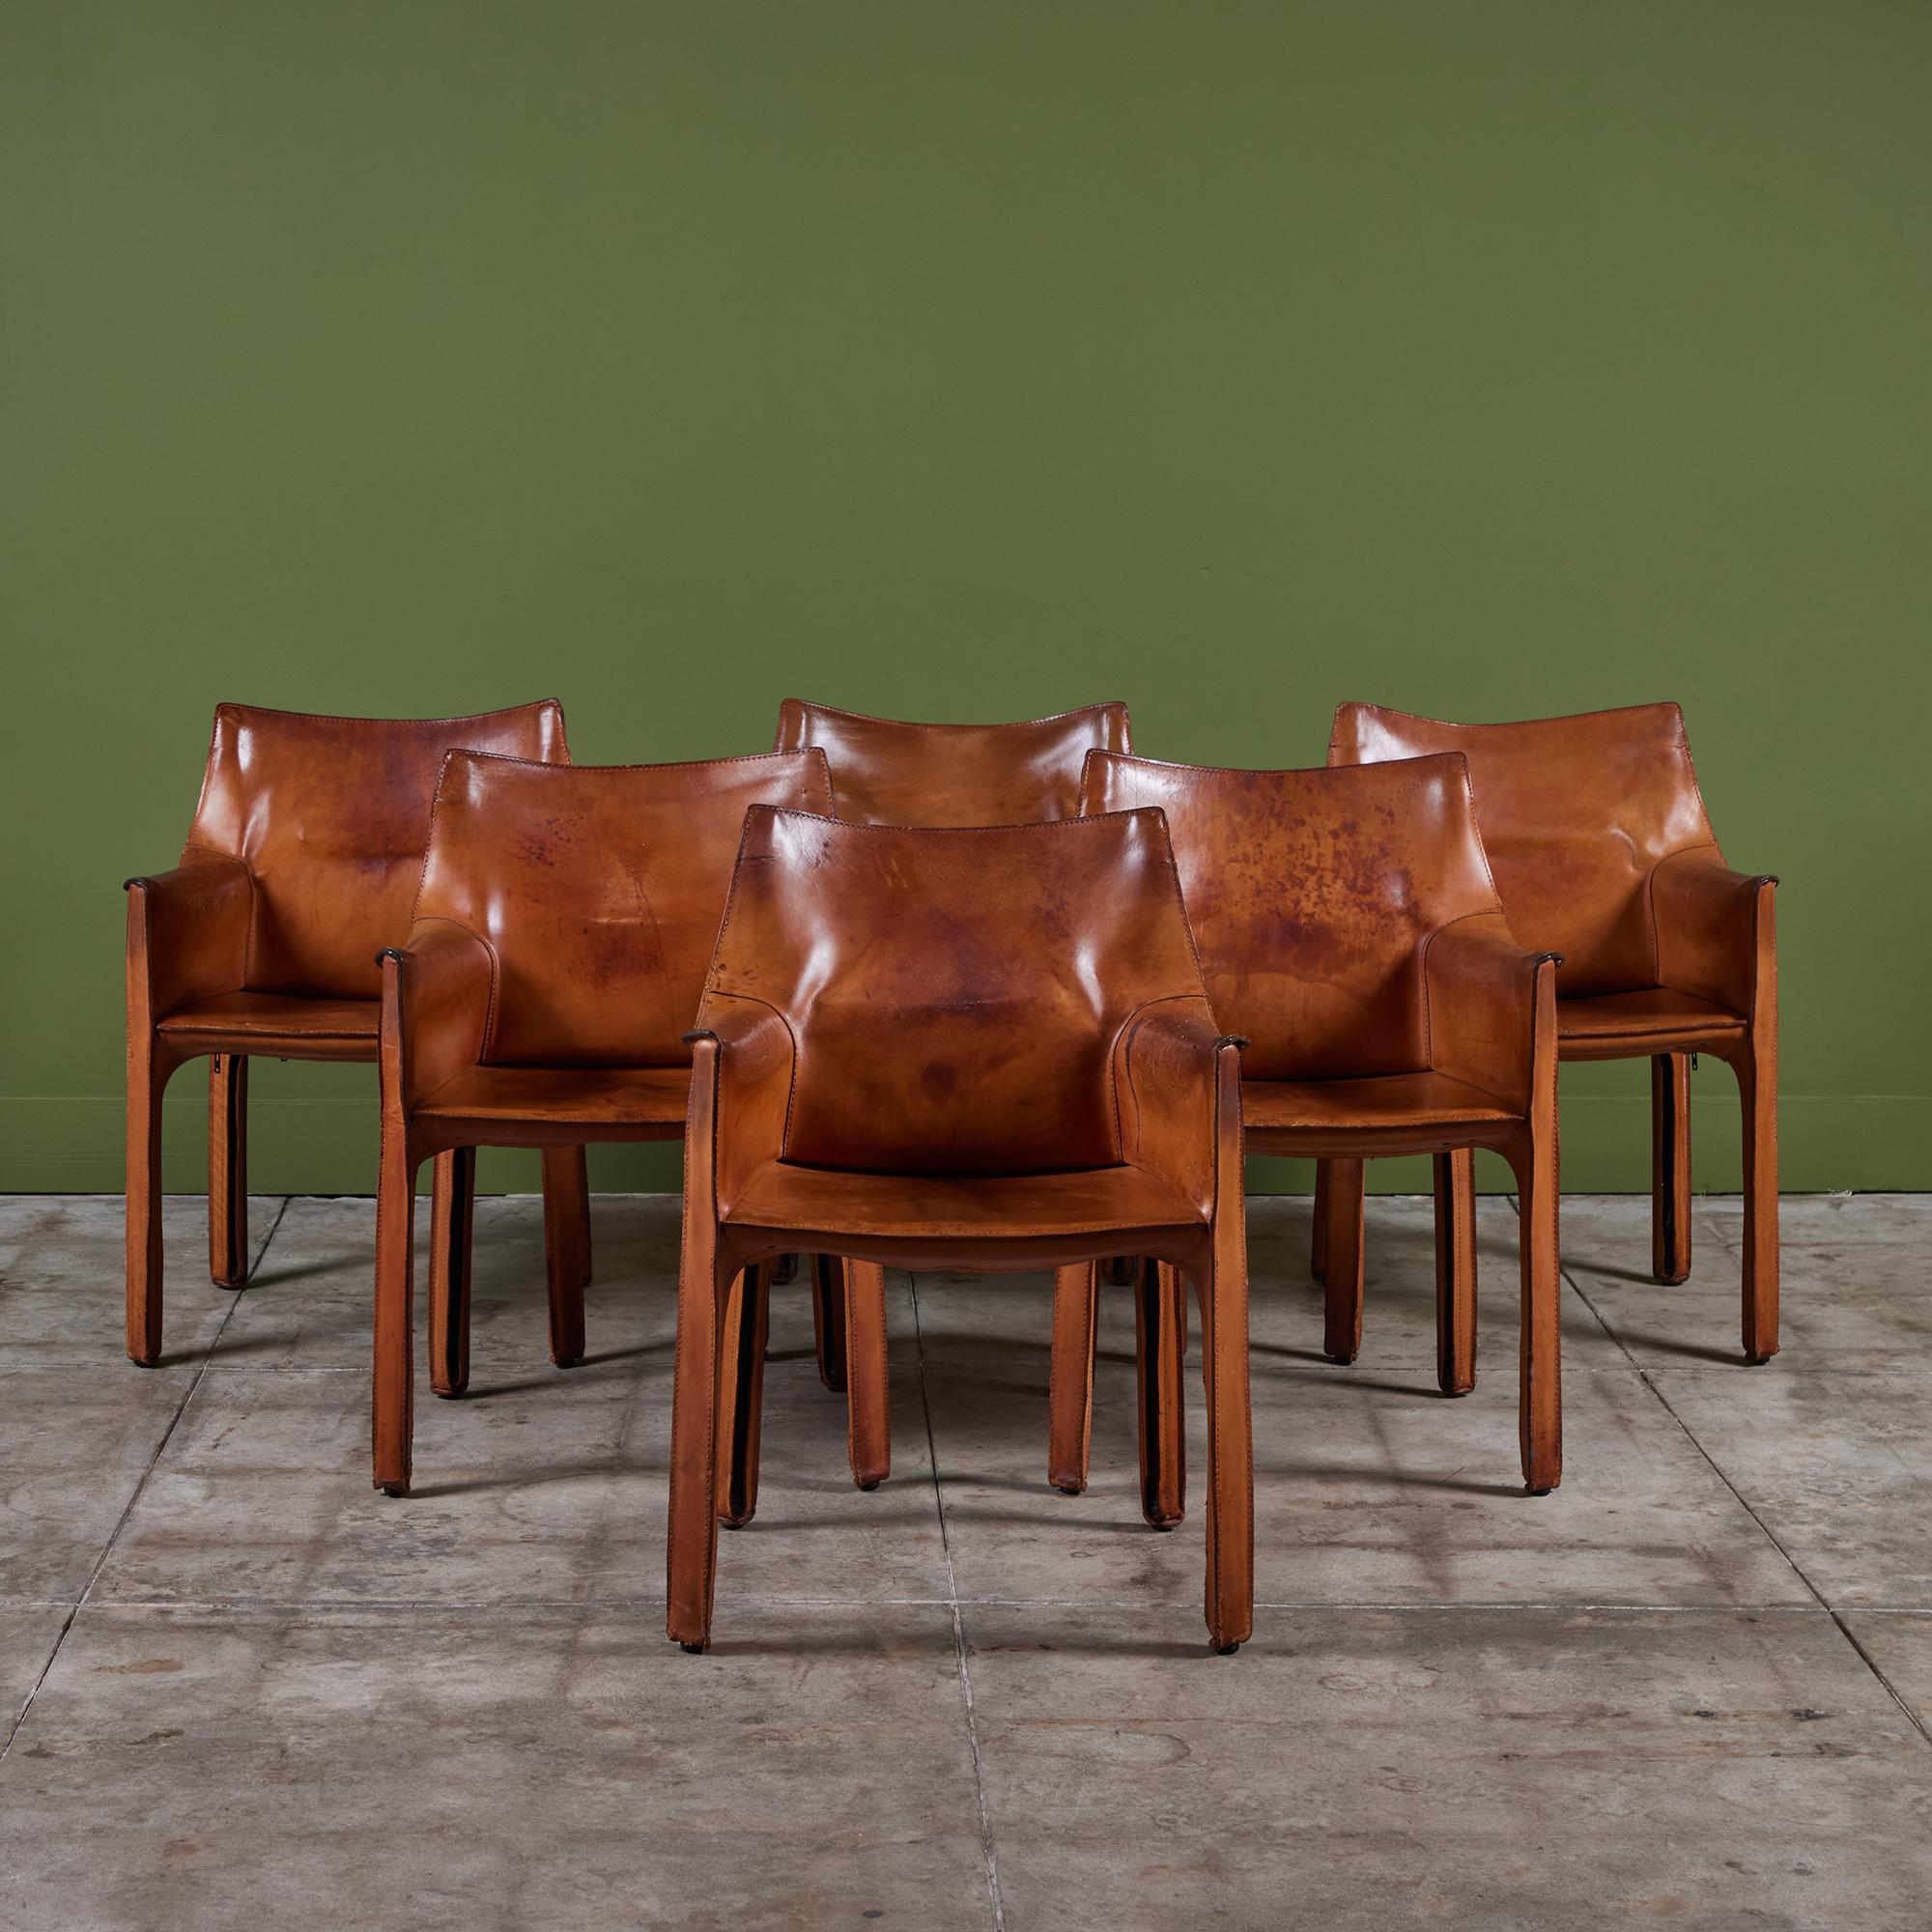 Die ikonischen Stühle, die von Mario Bellini für Cassina in den 1970er Jahren in Italien entworfen wurden, sind mit dem originalen Kamelsattelleder bezogen, das auf den Stahlrahmen aufgelegt ist. Dieser Satz von sechs Sesseln ist perfekt patiniert.